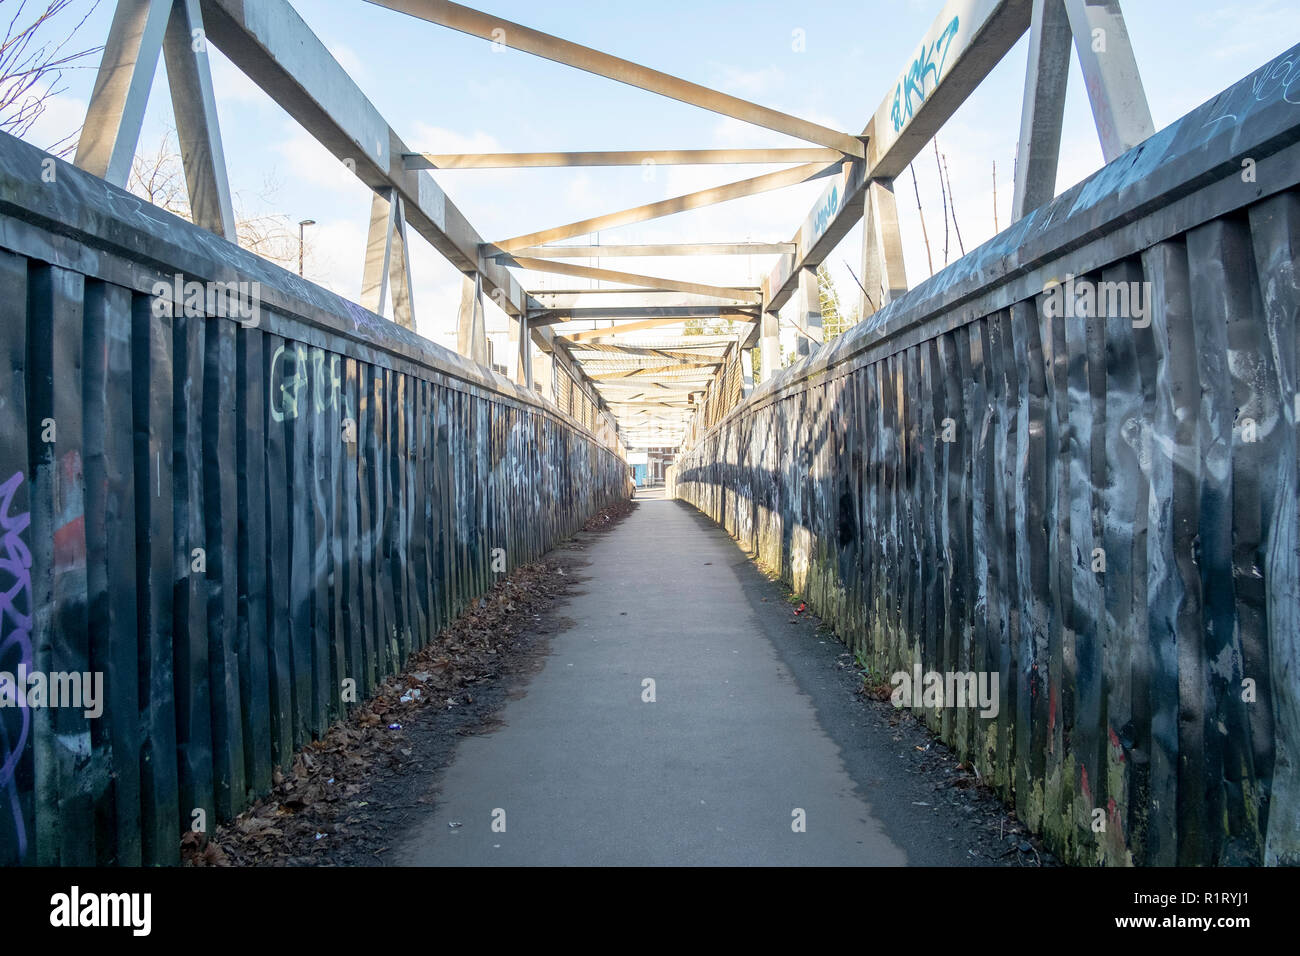 Railway footbridge in Heaton Newcastle upon Tyne with urban decay